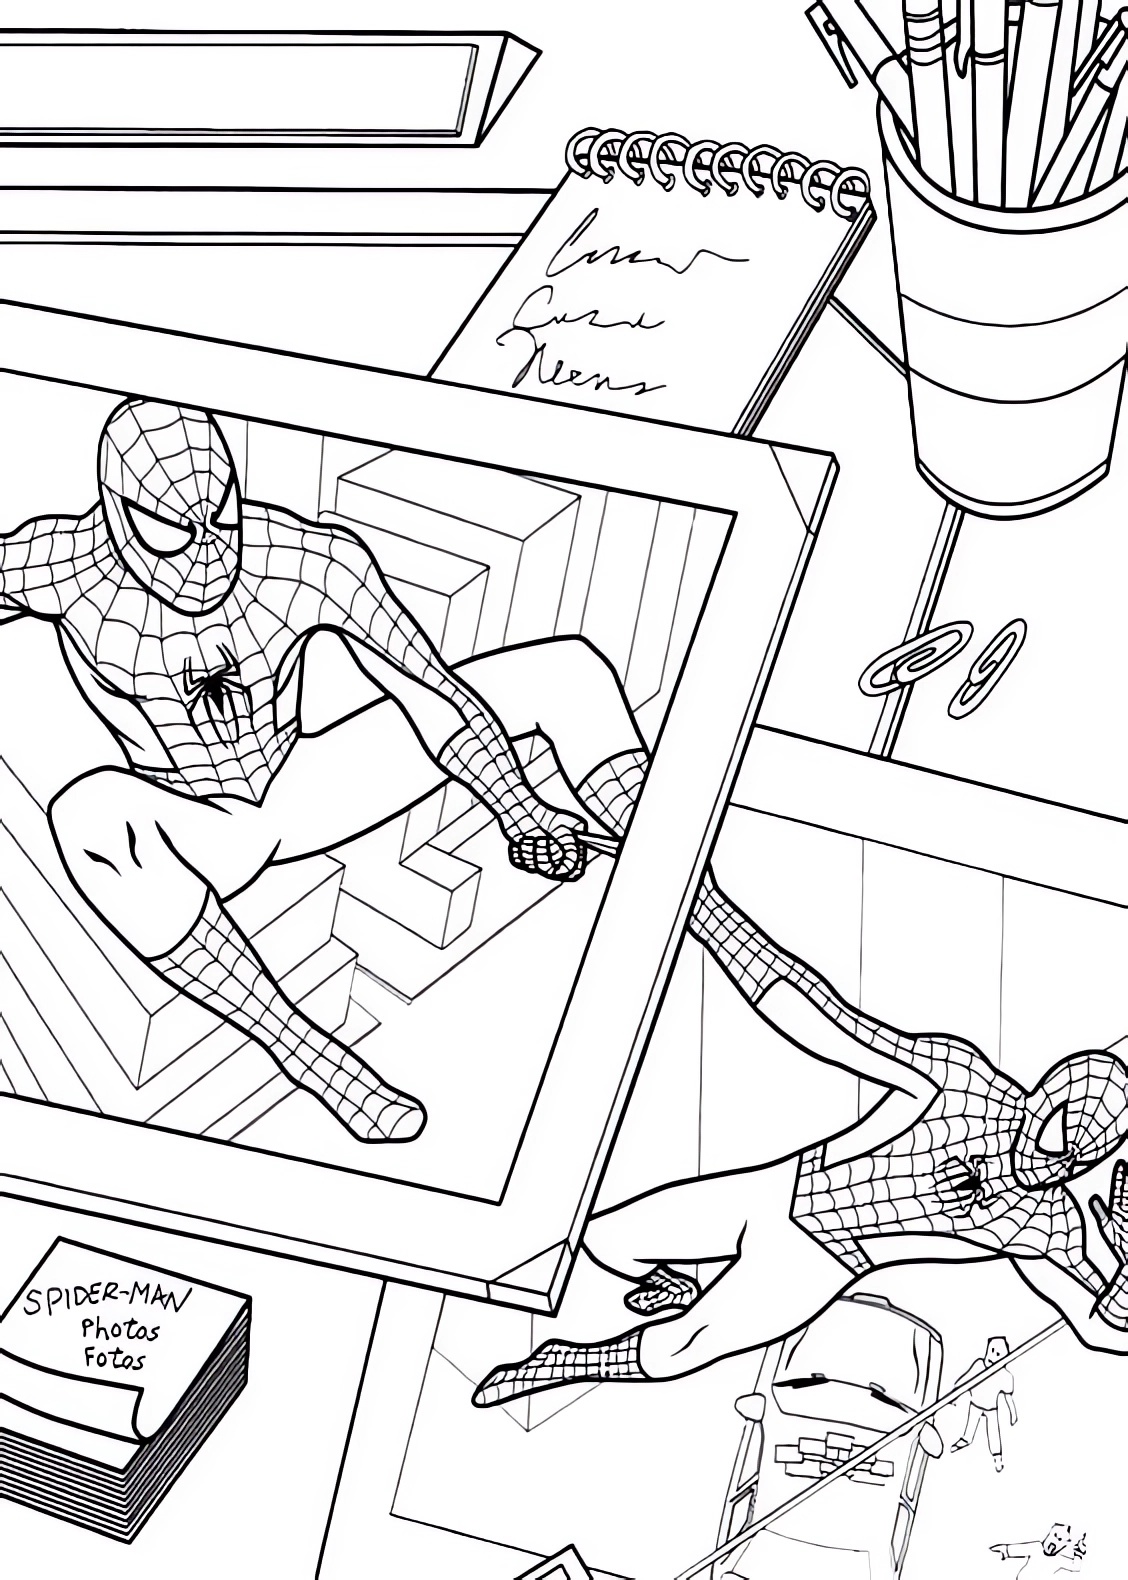 Spiderman dibujando en fotos de Peter Parker para imprimir y colorear